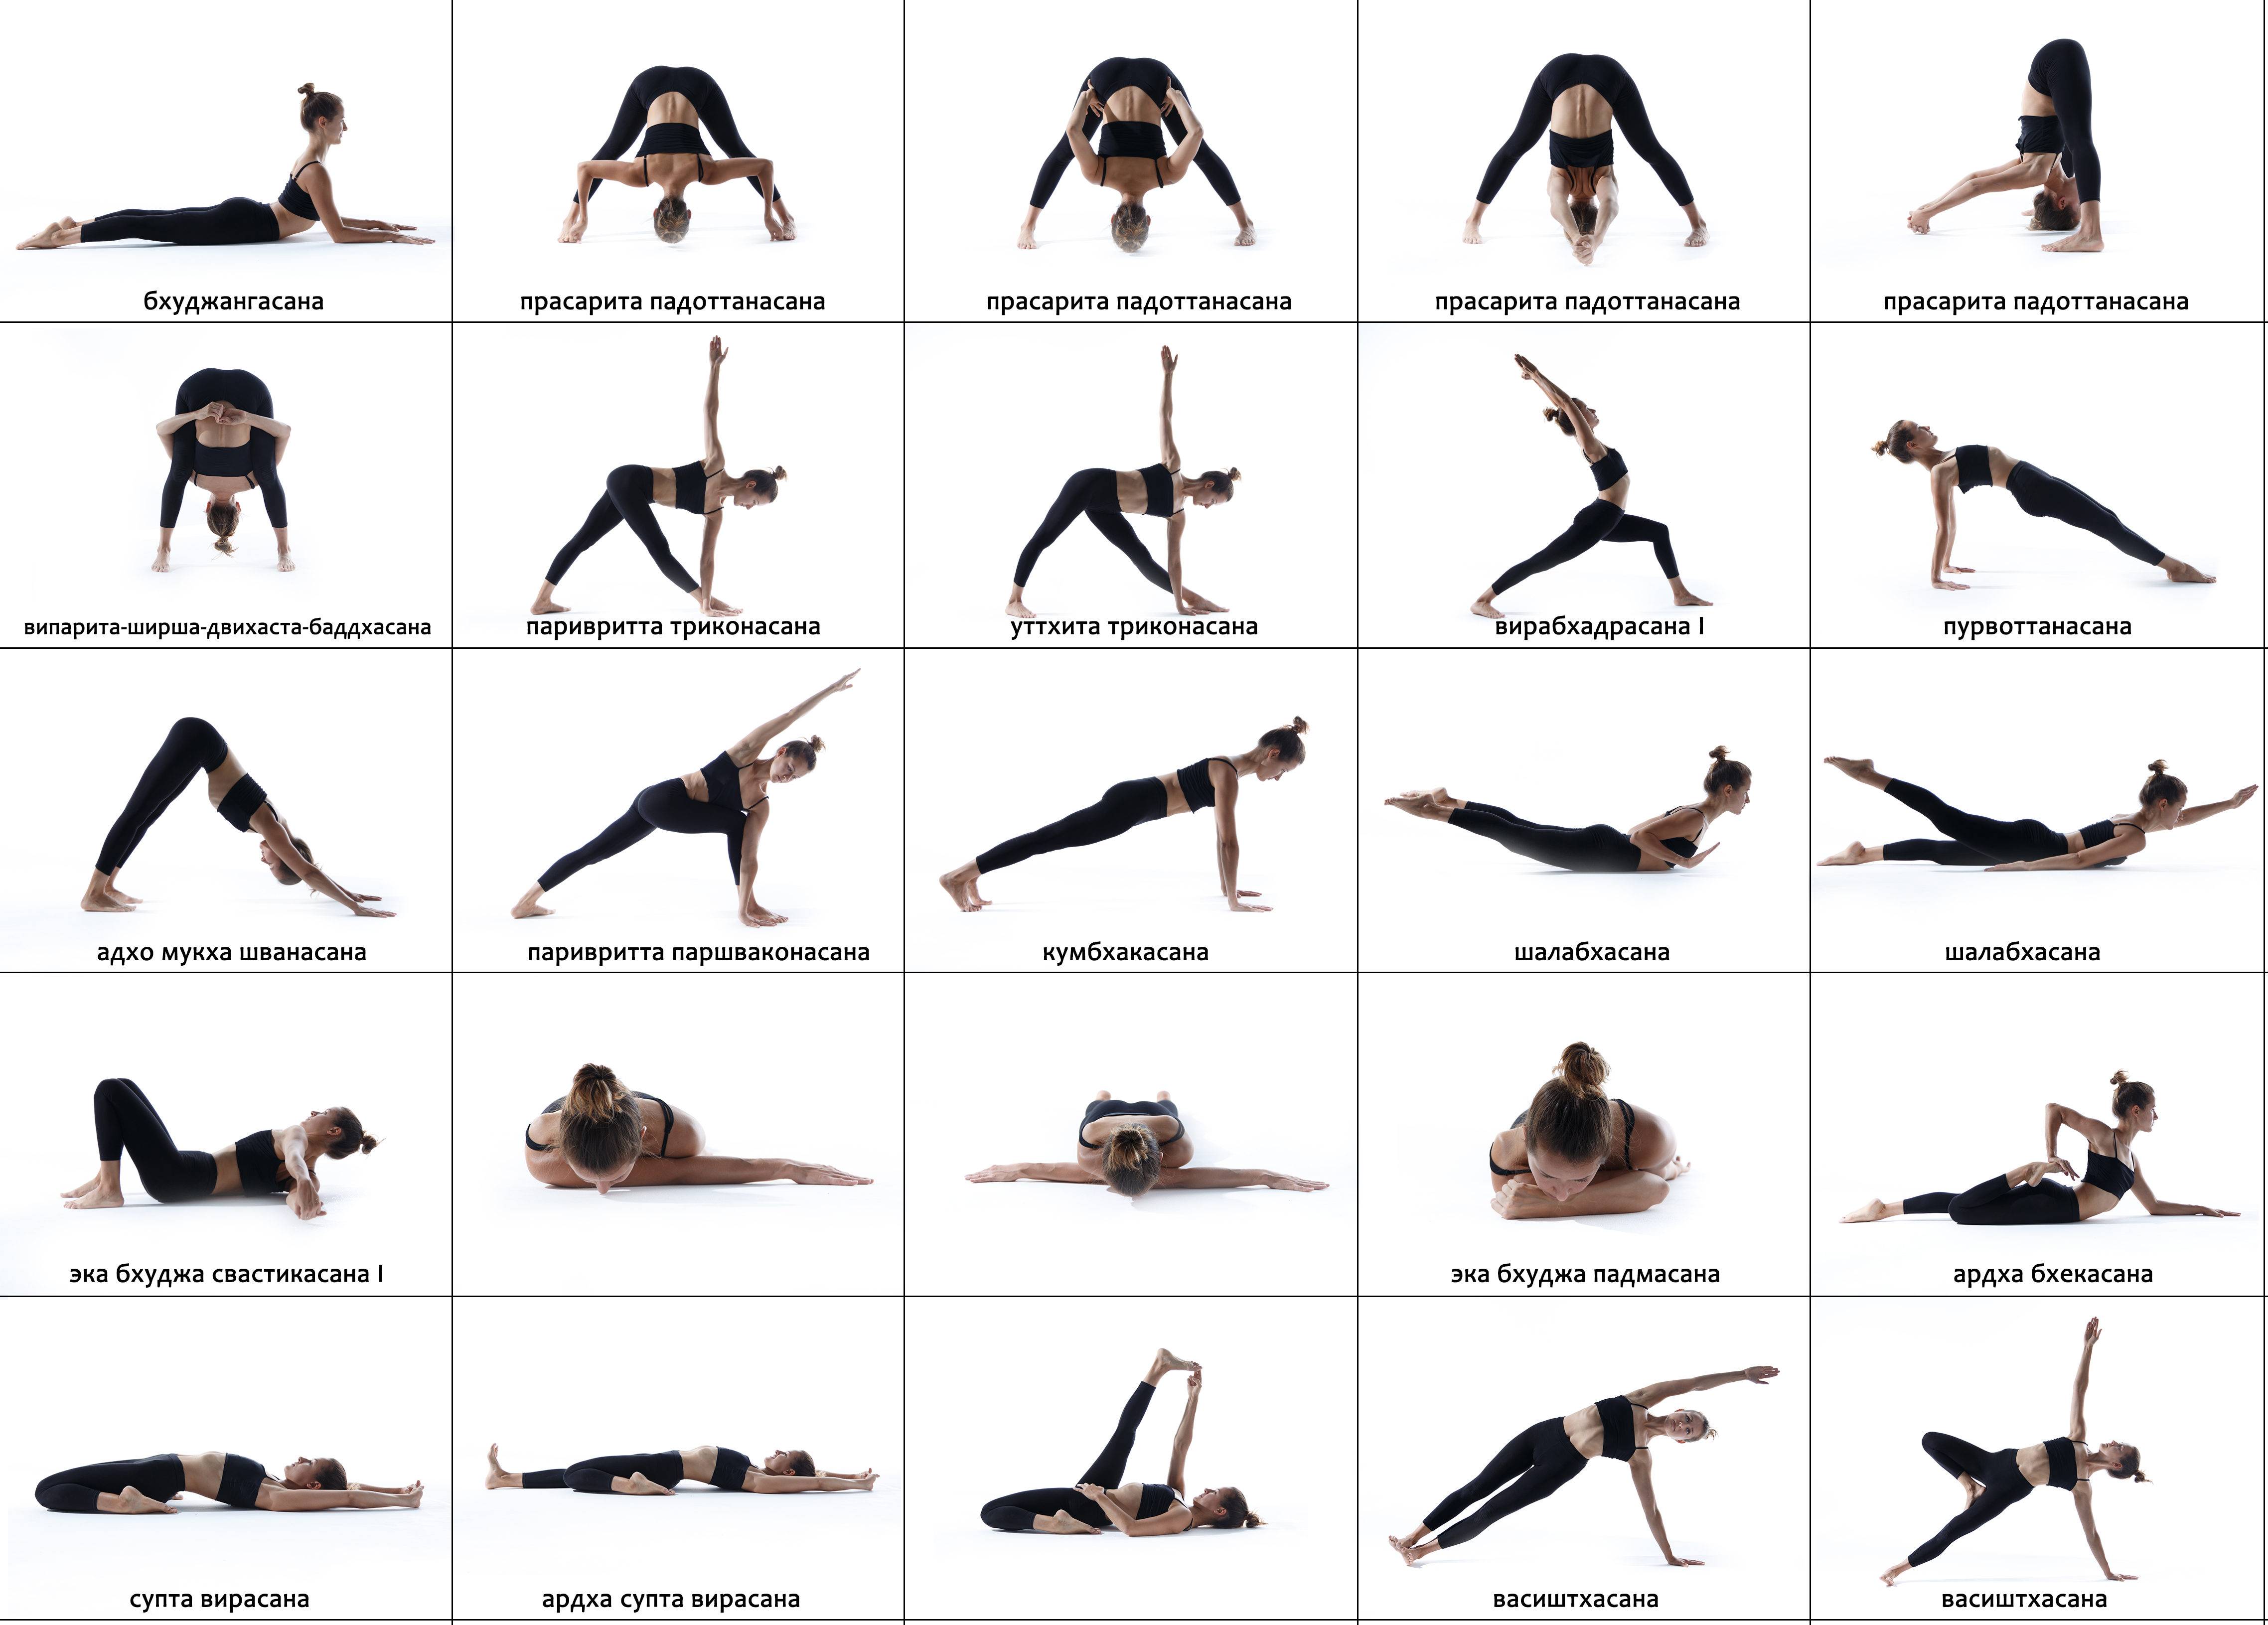 Упражнения из йоги для ног, ягодиц и бедер в домашних условиях для подтяжки и укрепления мышц попы